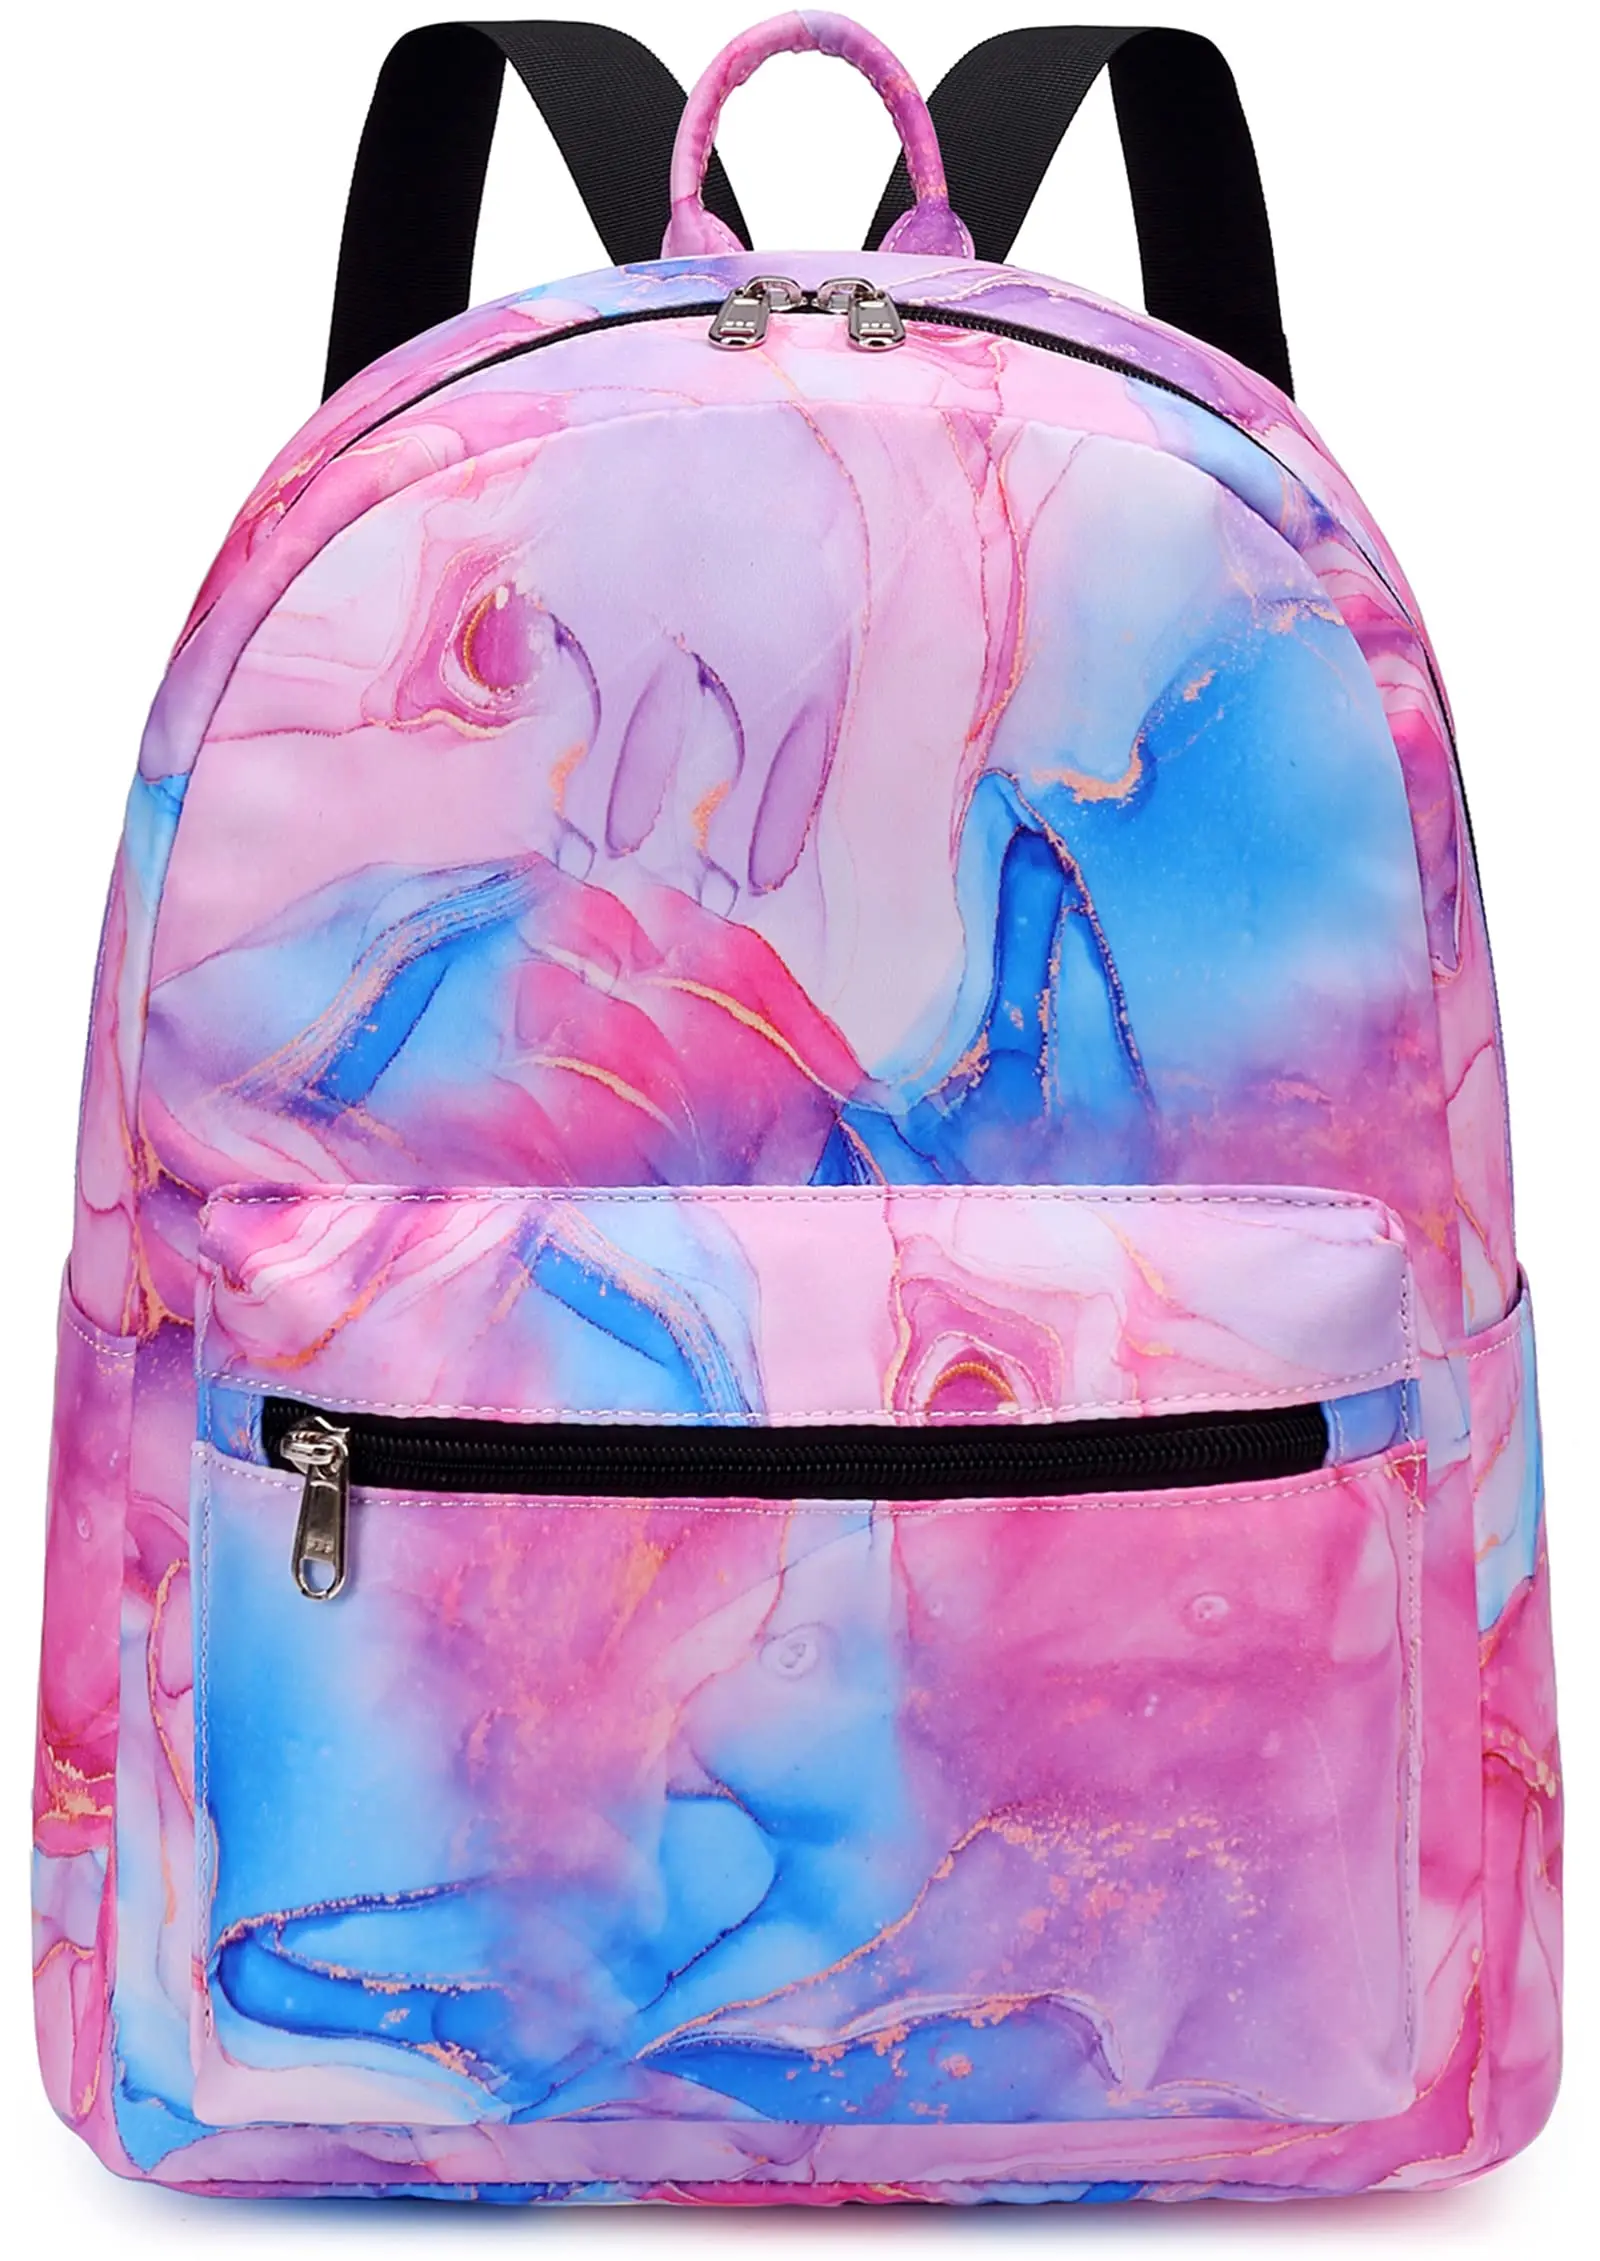 Marbled Mini Backpack - Pink & White